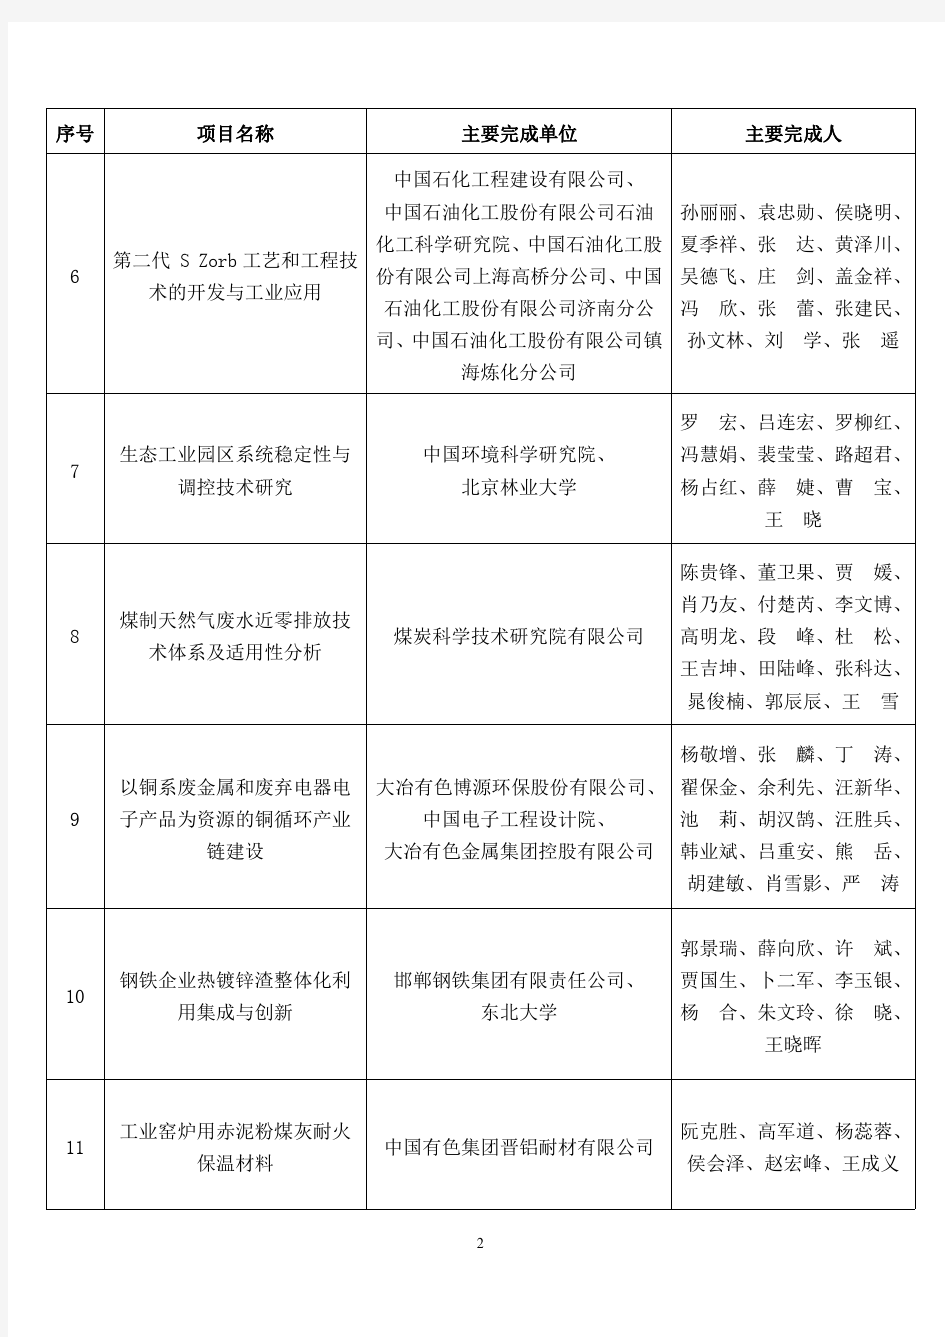 2016中国循环经济协会科学技术奖项目排序不分先后